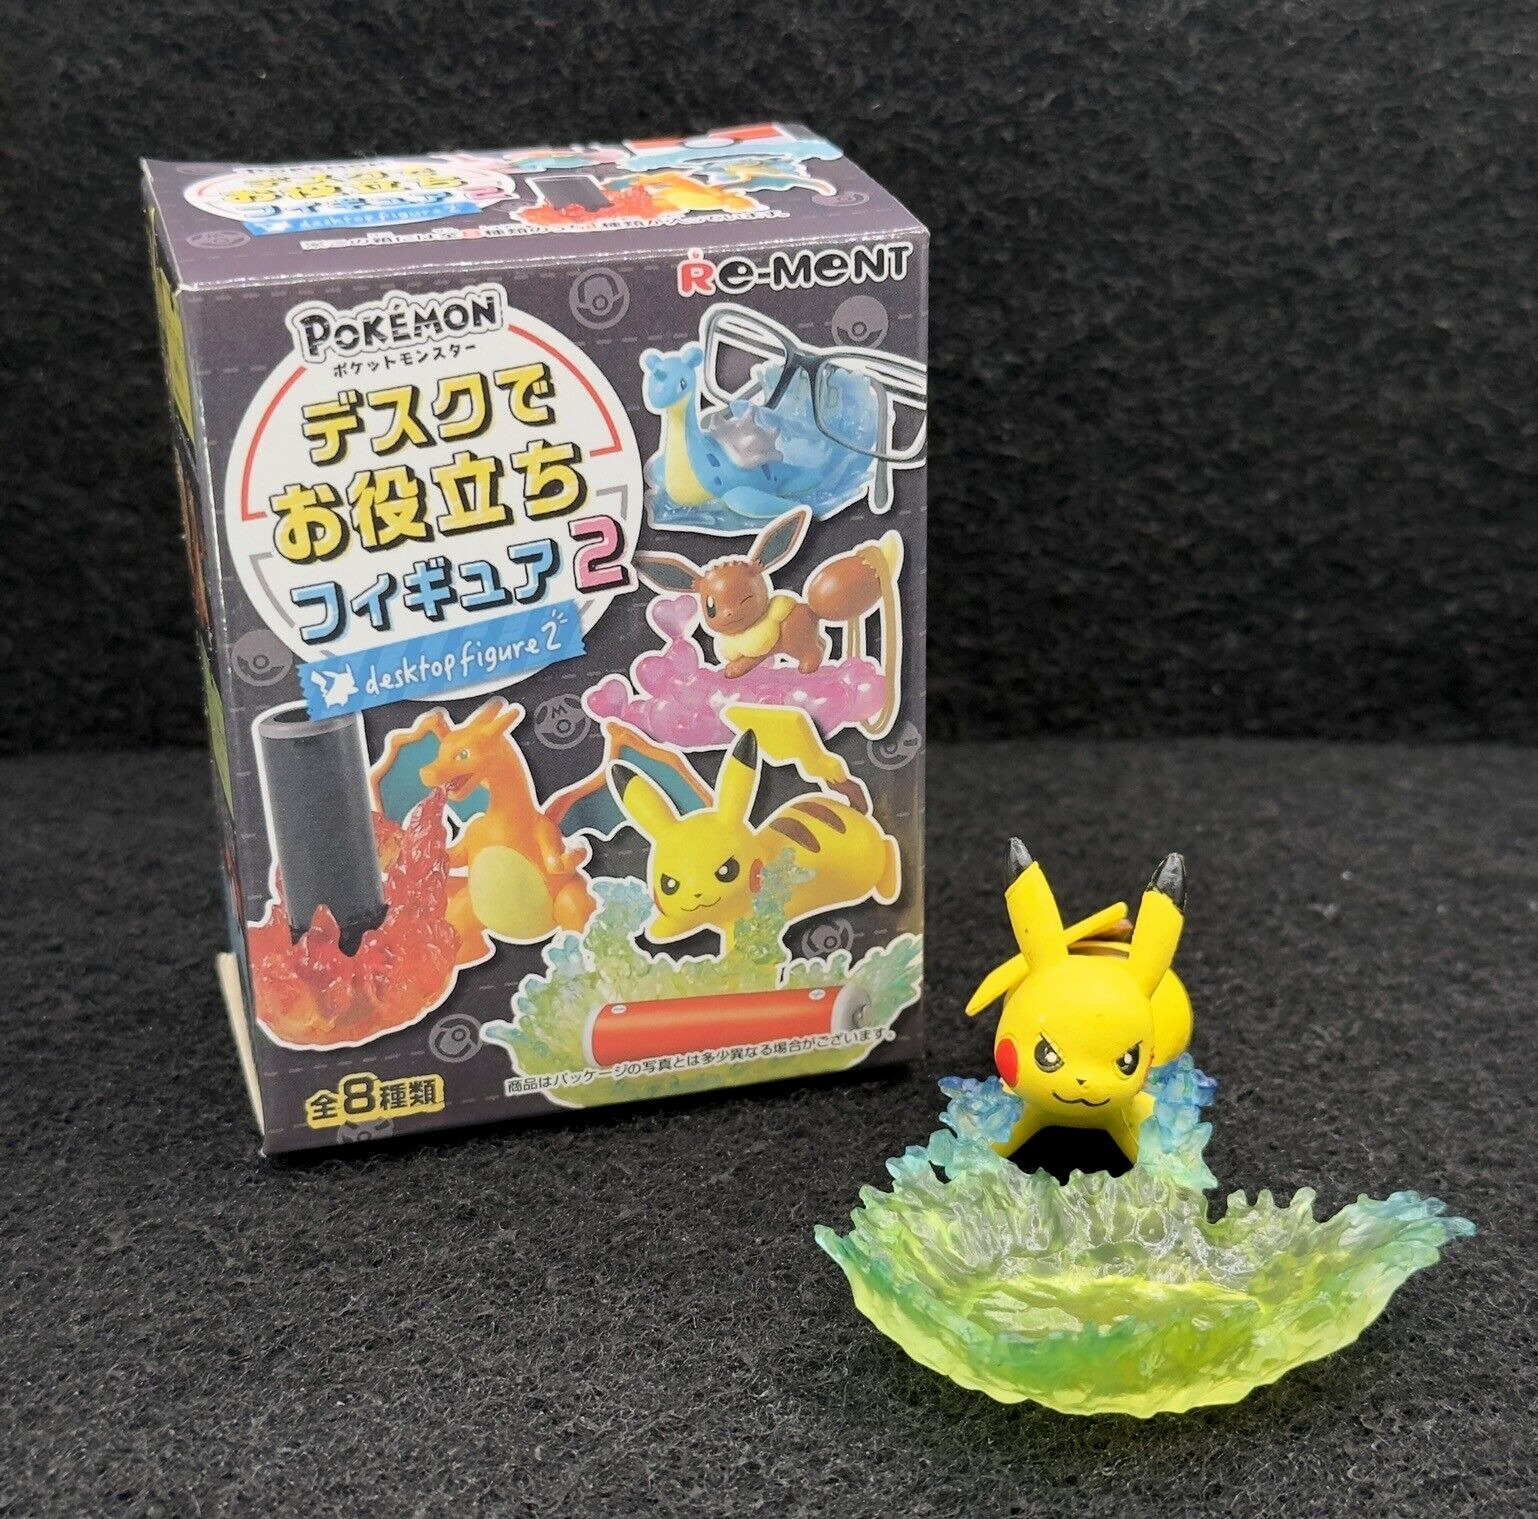 Pokemon Re-ment Japan 2017 DeskTop Figure 2 Collection (Pikachu) Japanese Import